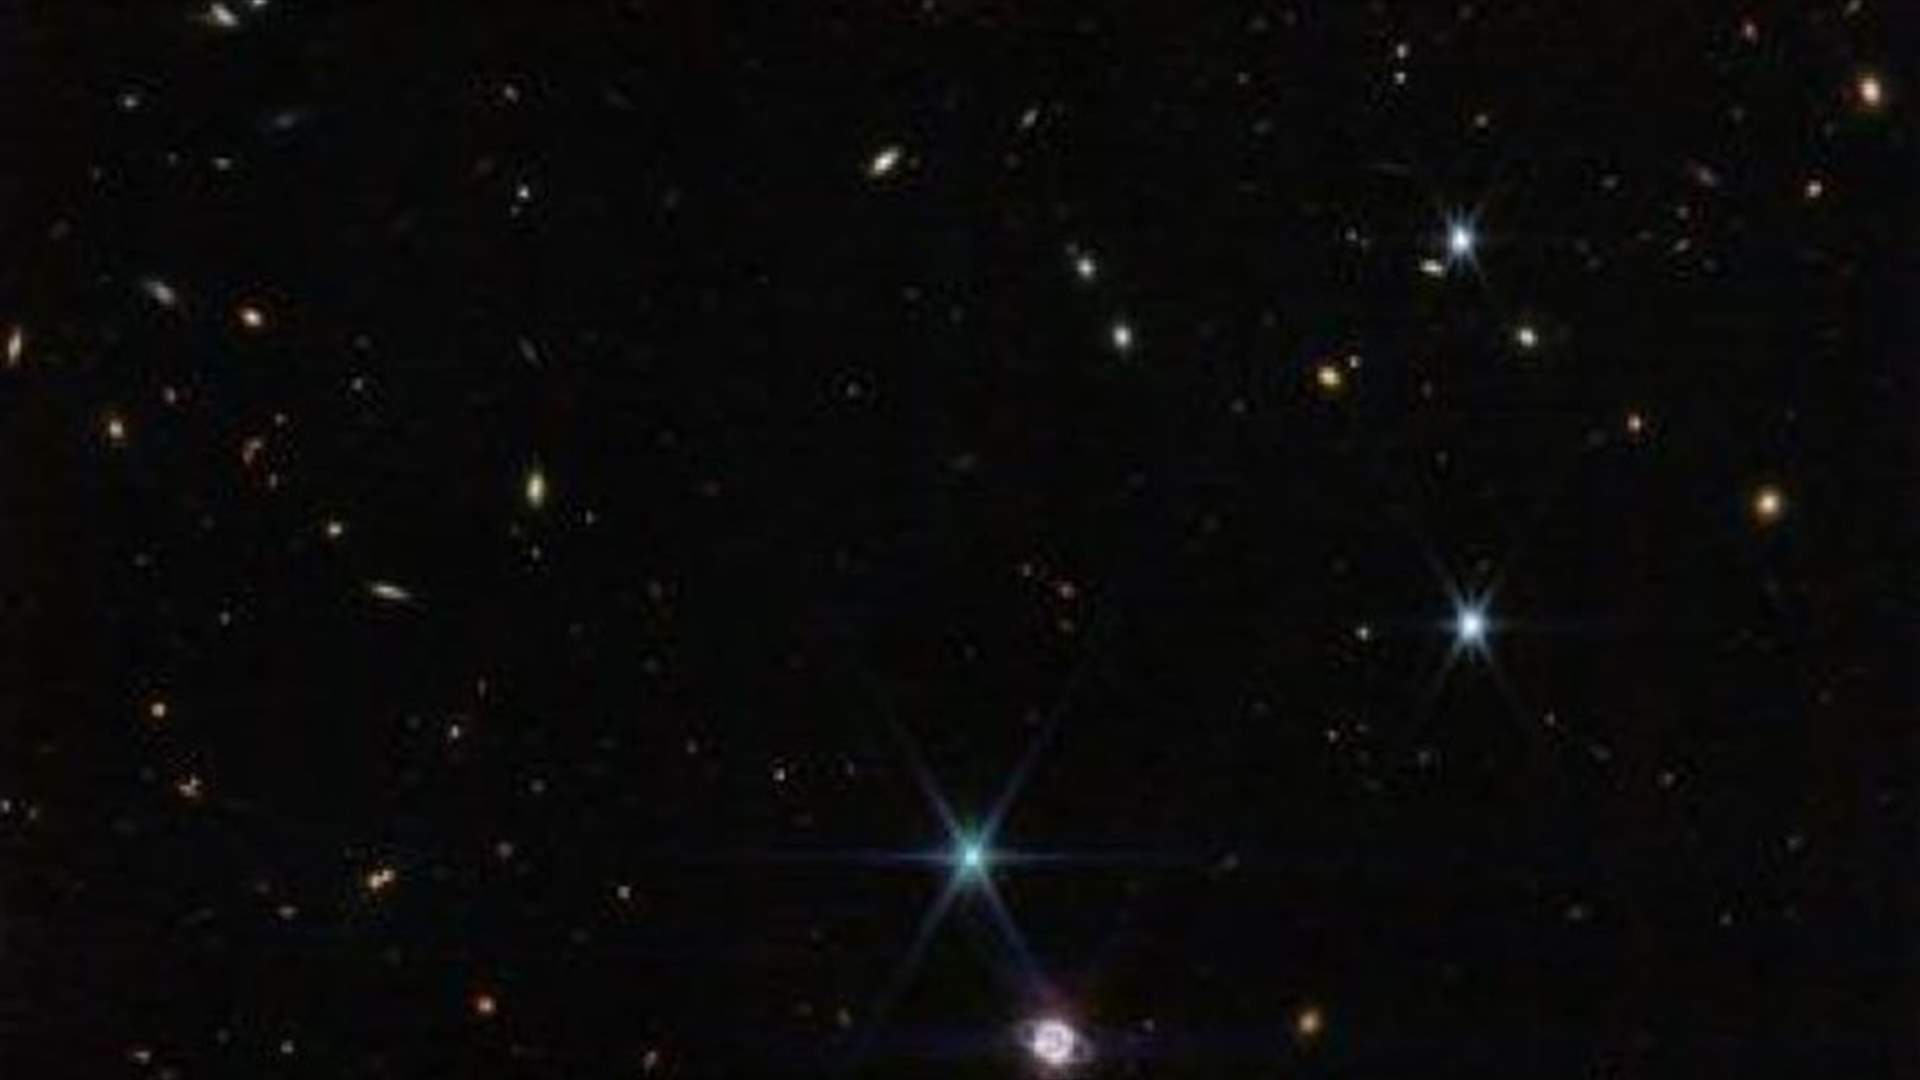 التلسكوب جيمس ويب يلتقط أوضح صور لحلقات نبتون منذ عقود (صور)